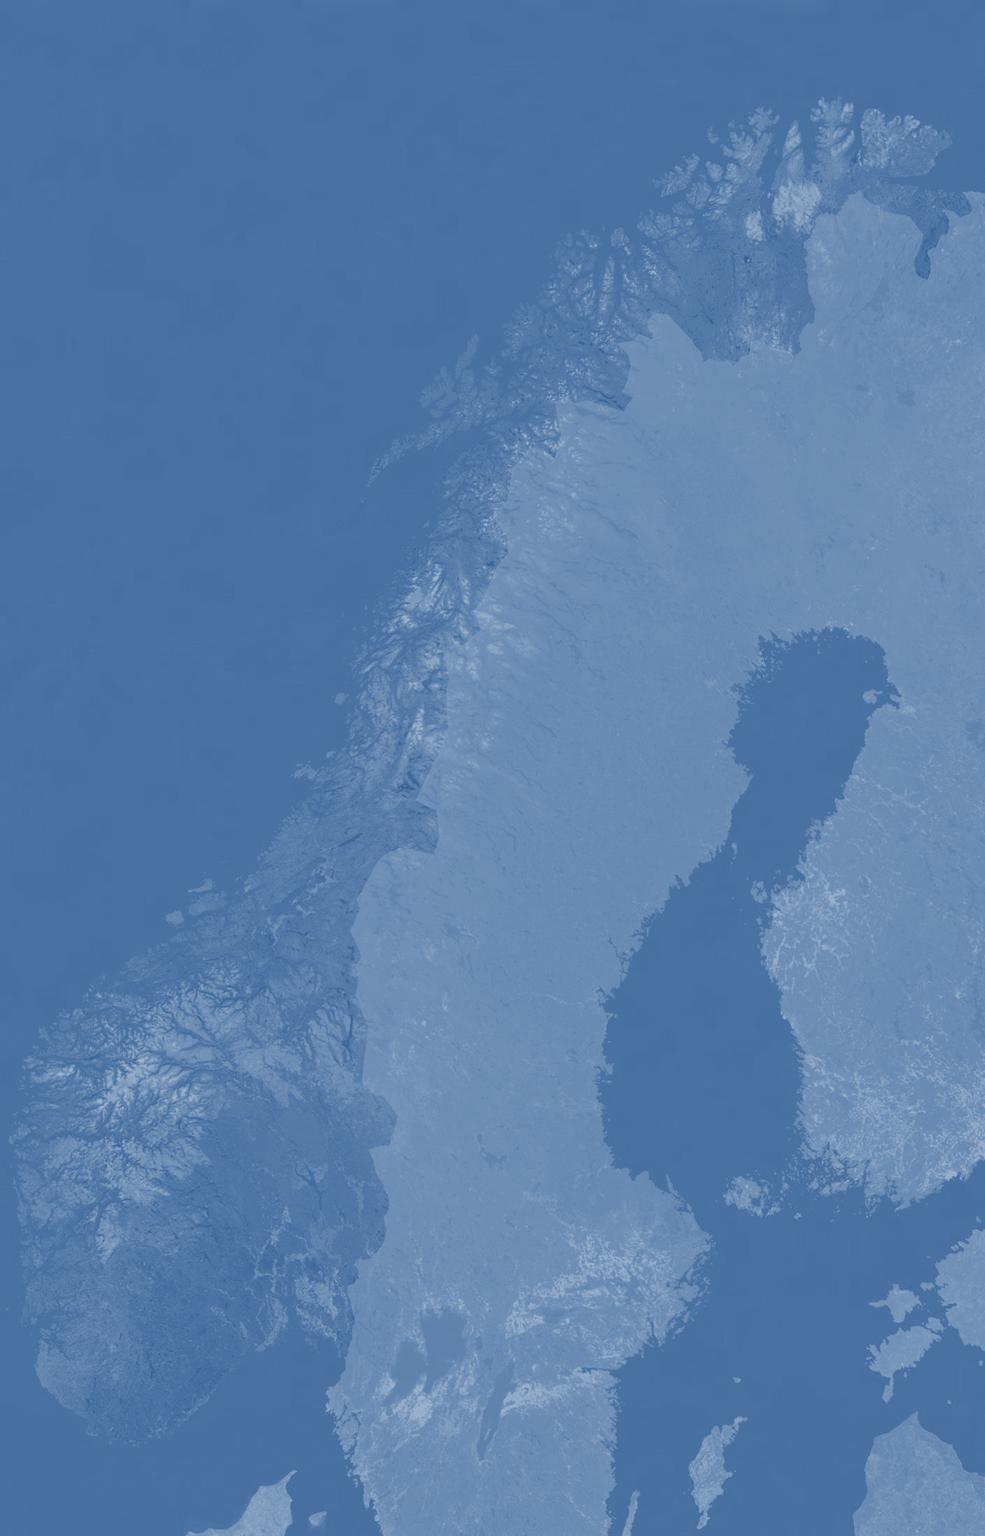 Norges lange kyst gir store muligheter Deler av kysten er skjermet og har korte transportstrekninger, mens andre deler er mer eksponert og utsatt for kraftig og varierende vind-, bølge og